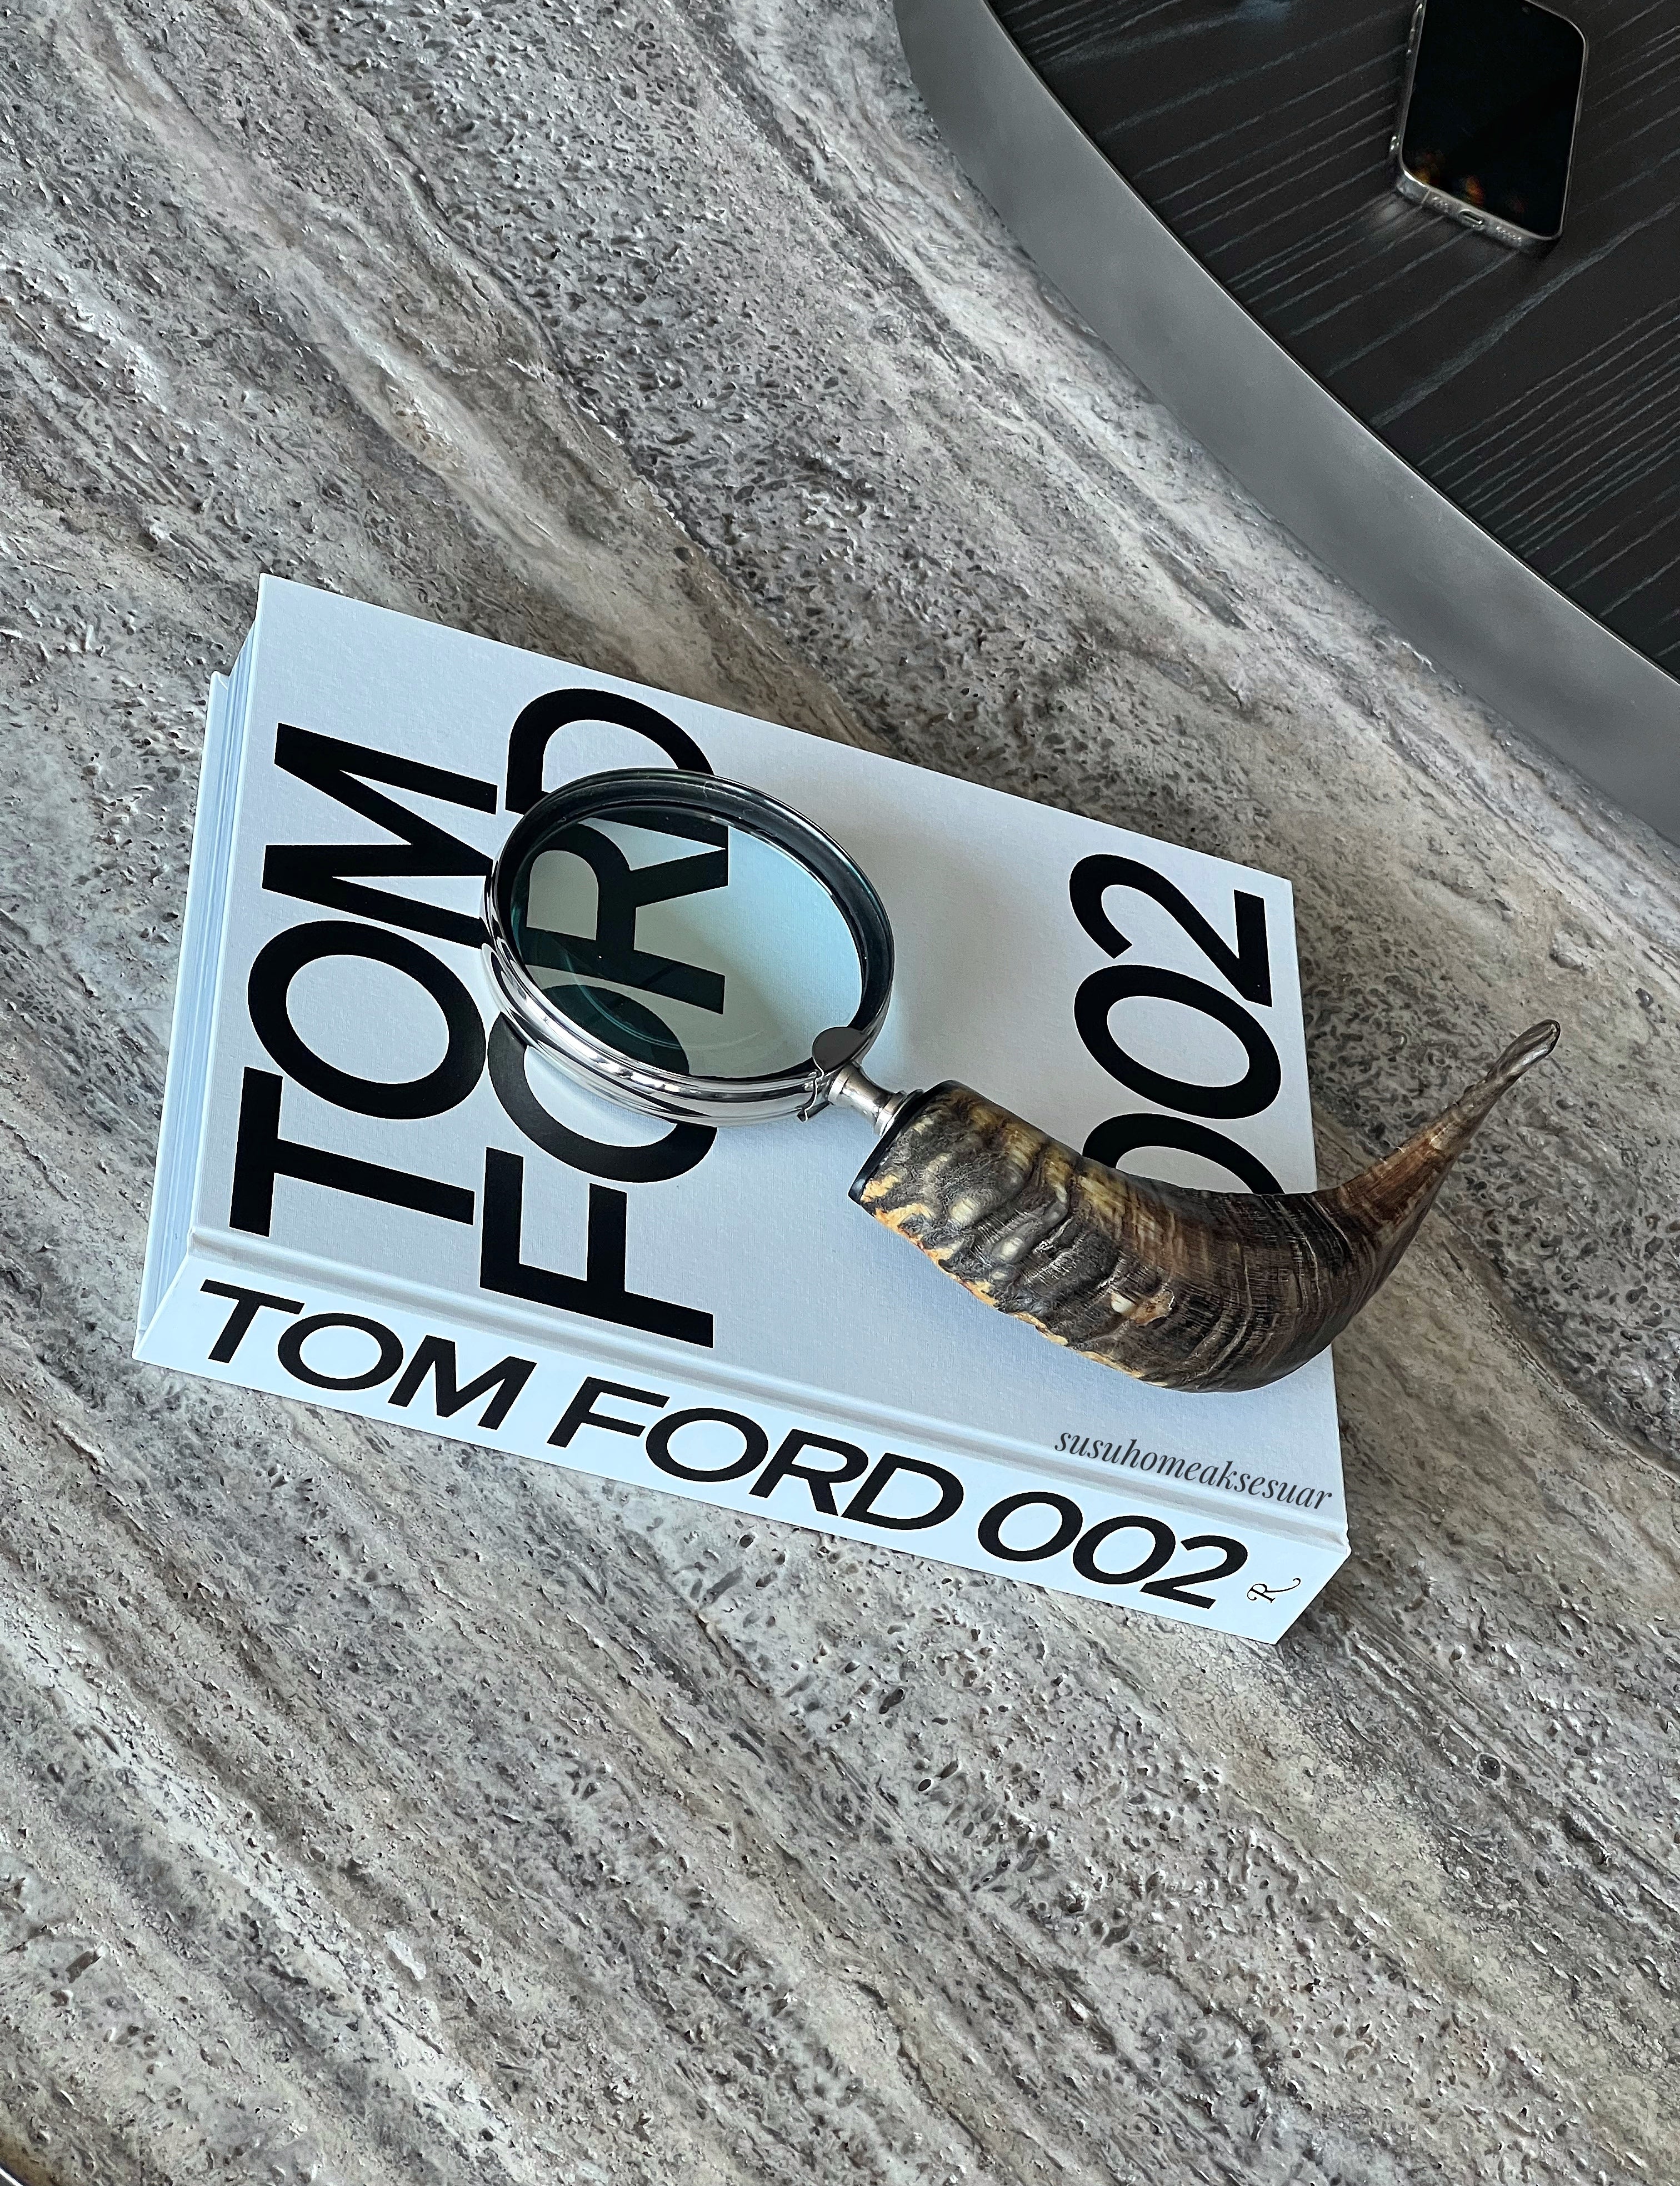 Tom Ford 002 Book (Kitap)